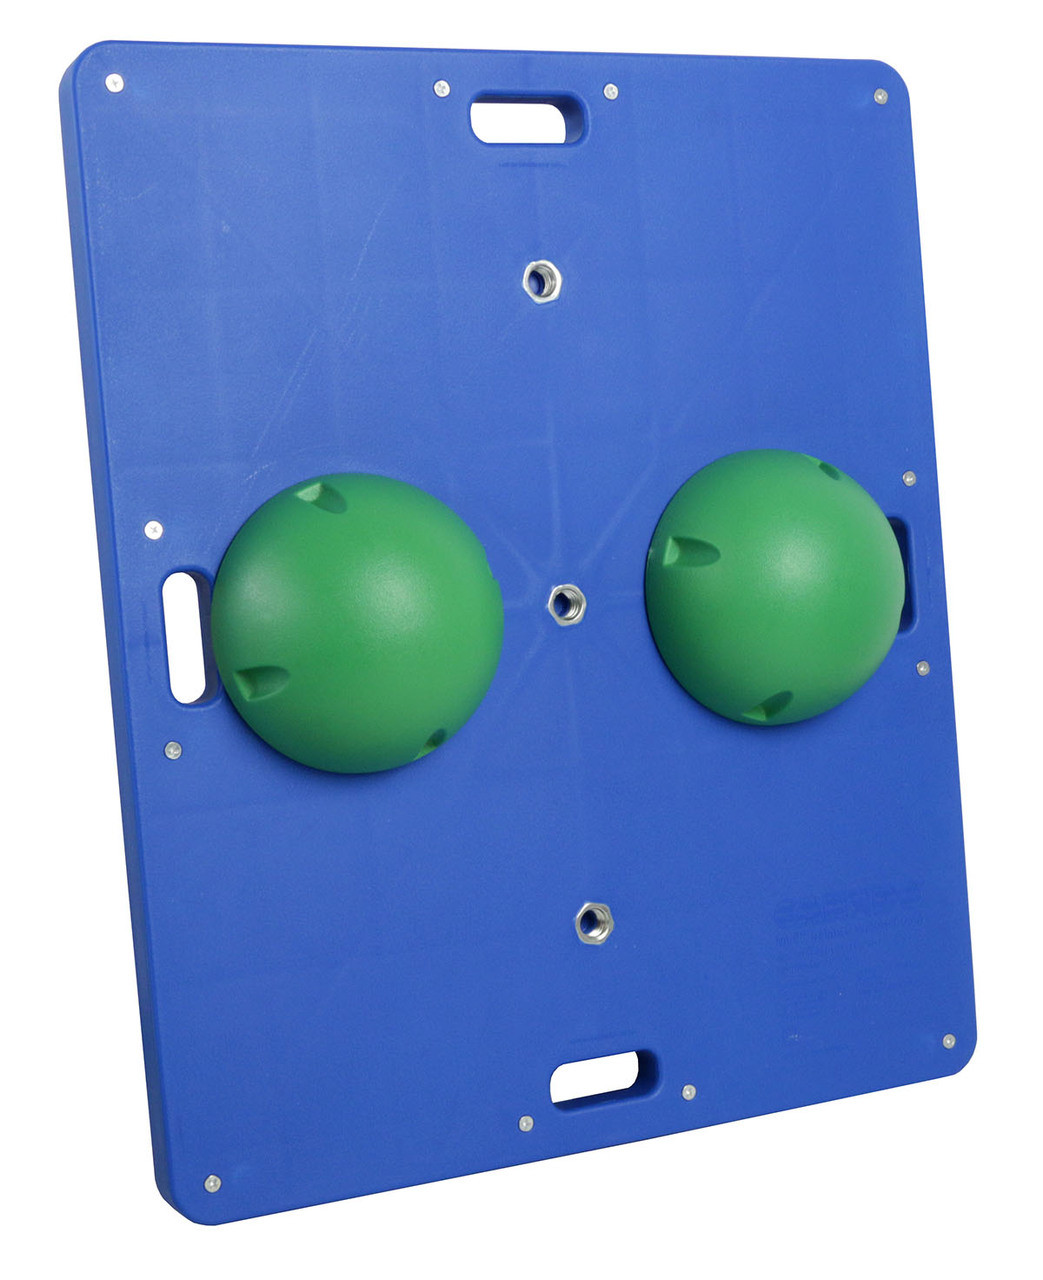 CanDo¨ Balance Board Comboª 15" x 18" wobble/rocker board - 2" height - green